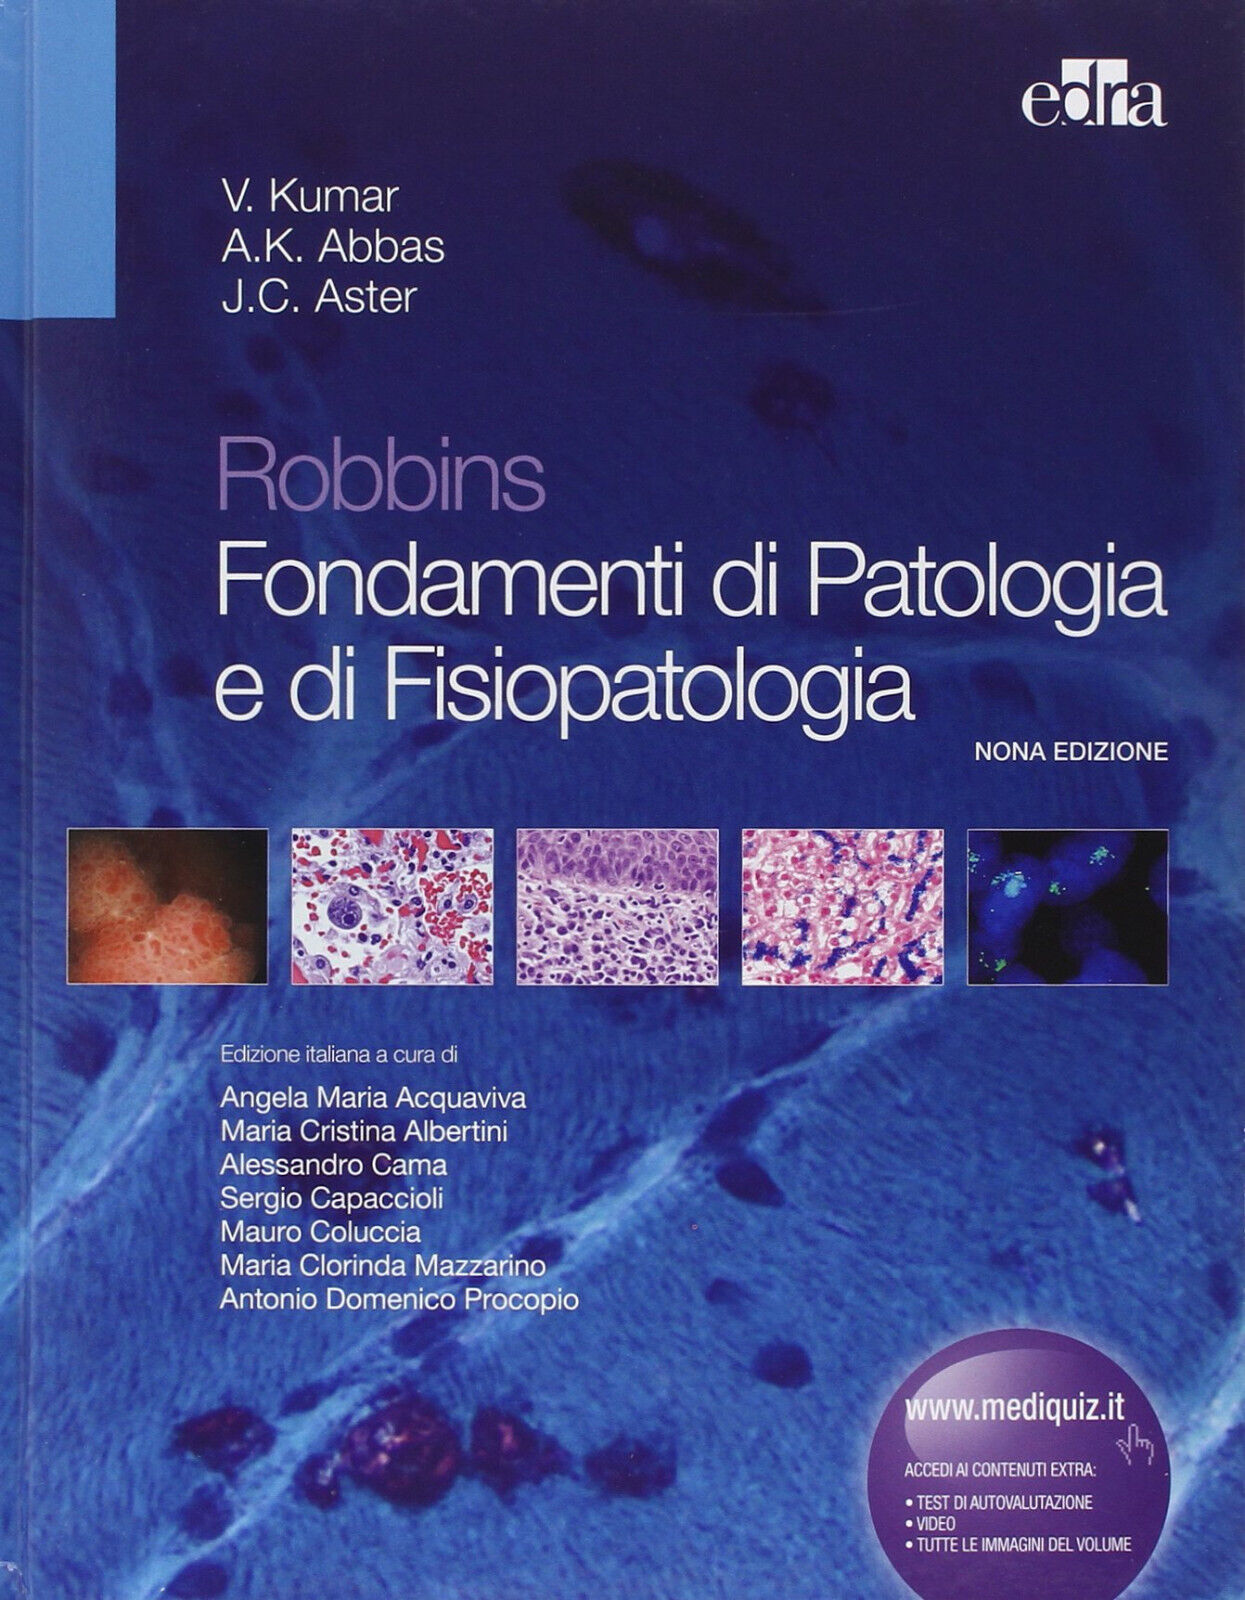 Robbins. Fondamenti di patologia e di fisiopatologia - Edra, 2013